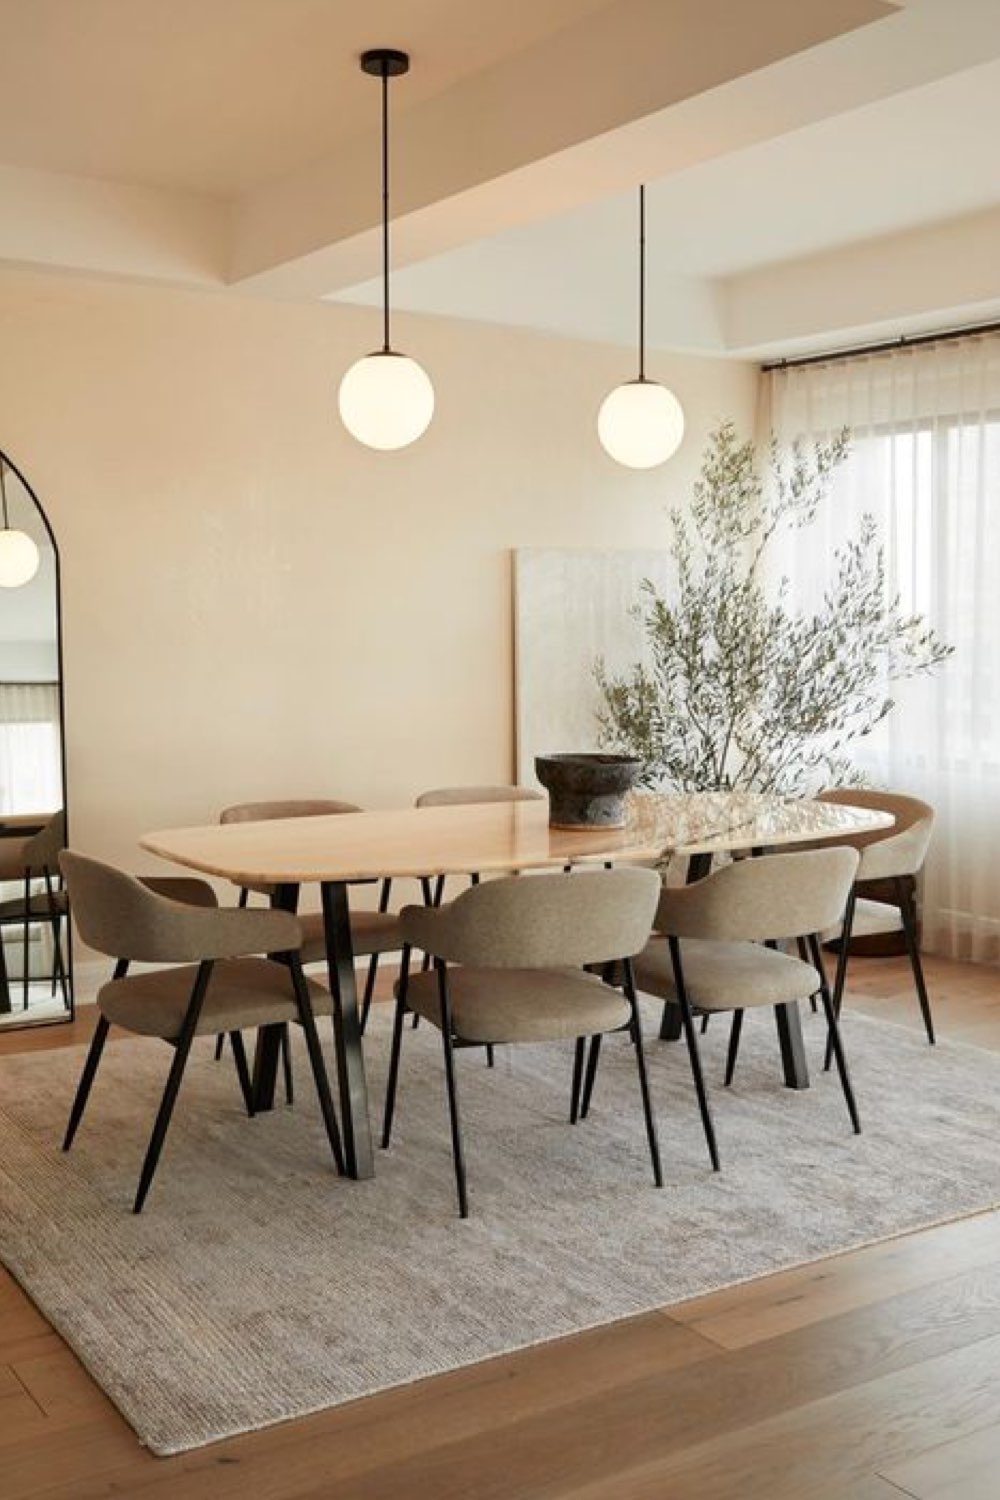 reussir decoration salle a manger décor sobre minimal chic design chaise vintage couleur verte tissus table ovale suspension épurée